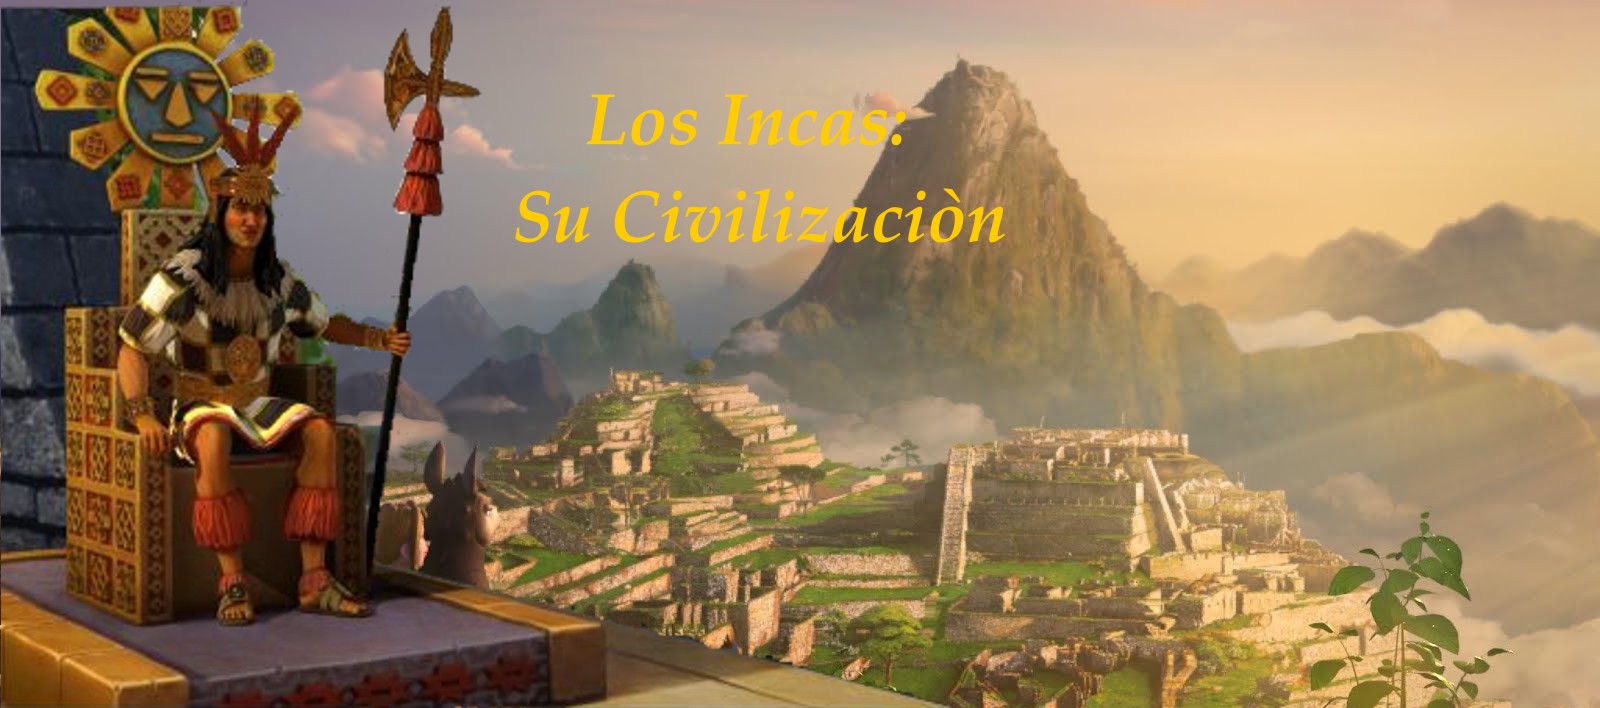 LOS INCAS: SU CIVILIZACION